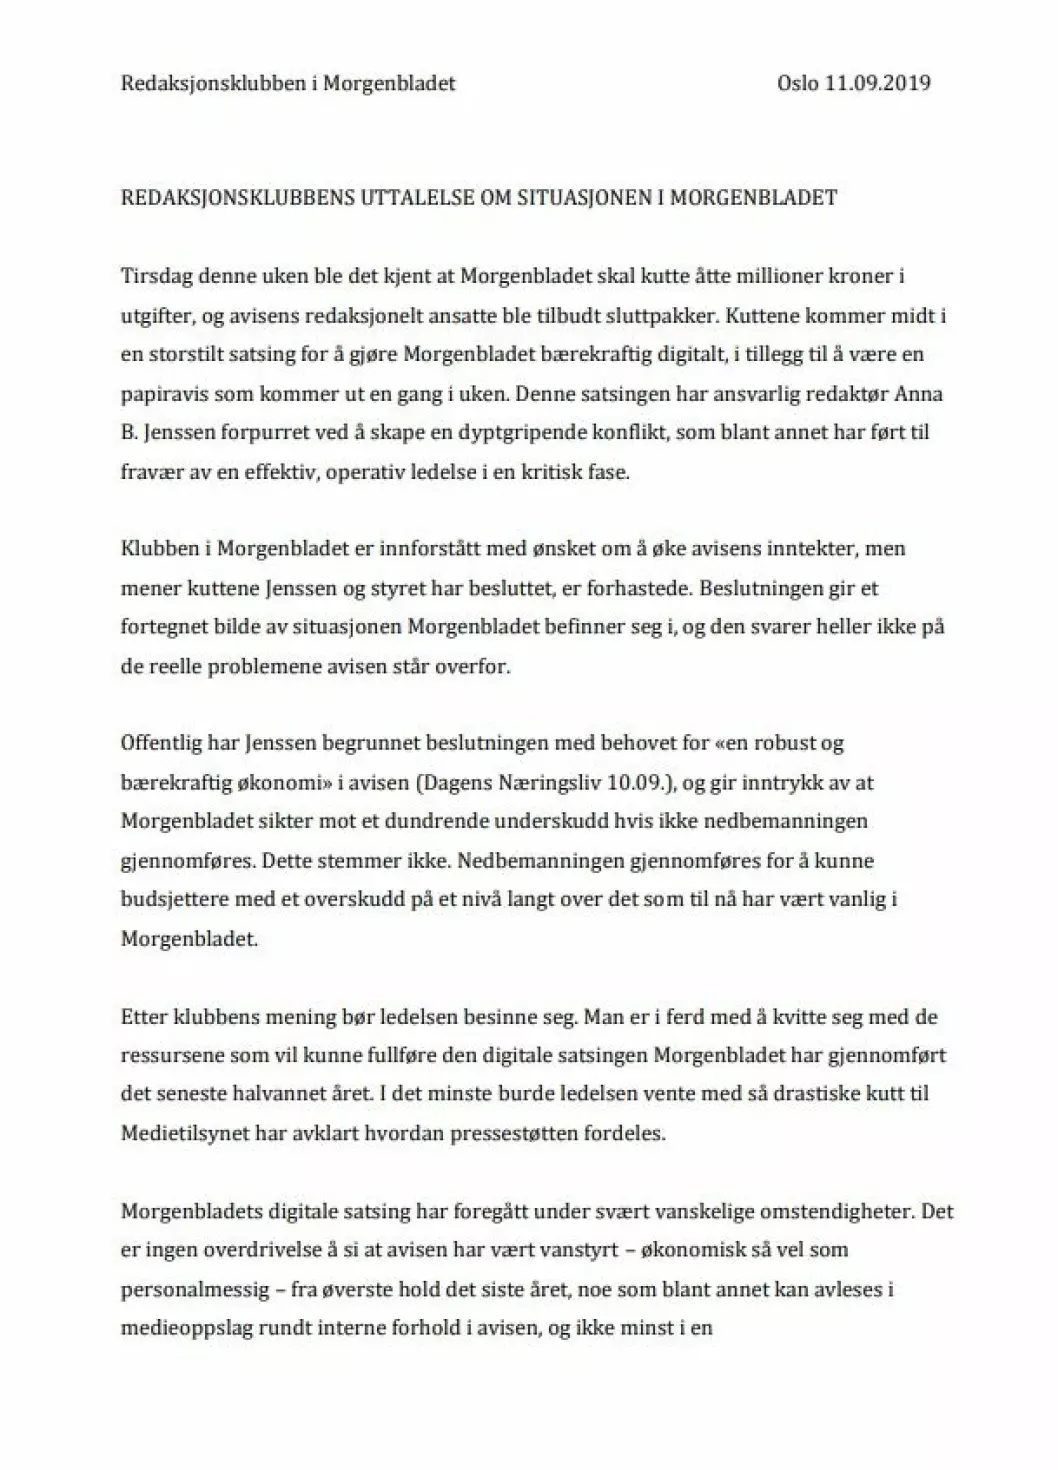 Brev sendt fra redaksjonsklubben i Morgenbladet til ledelsen.